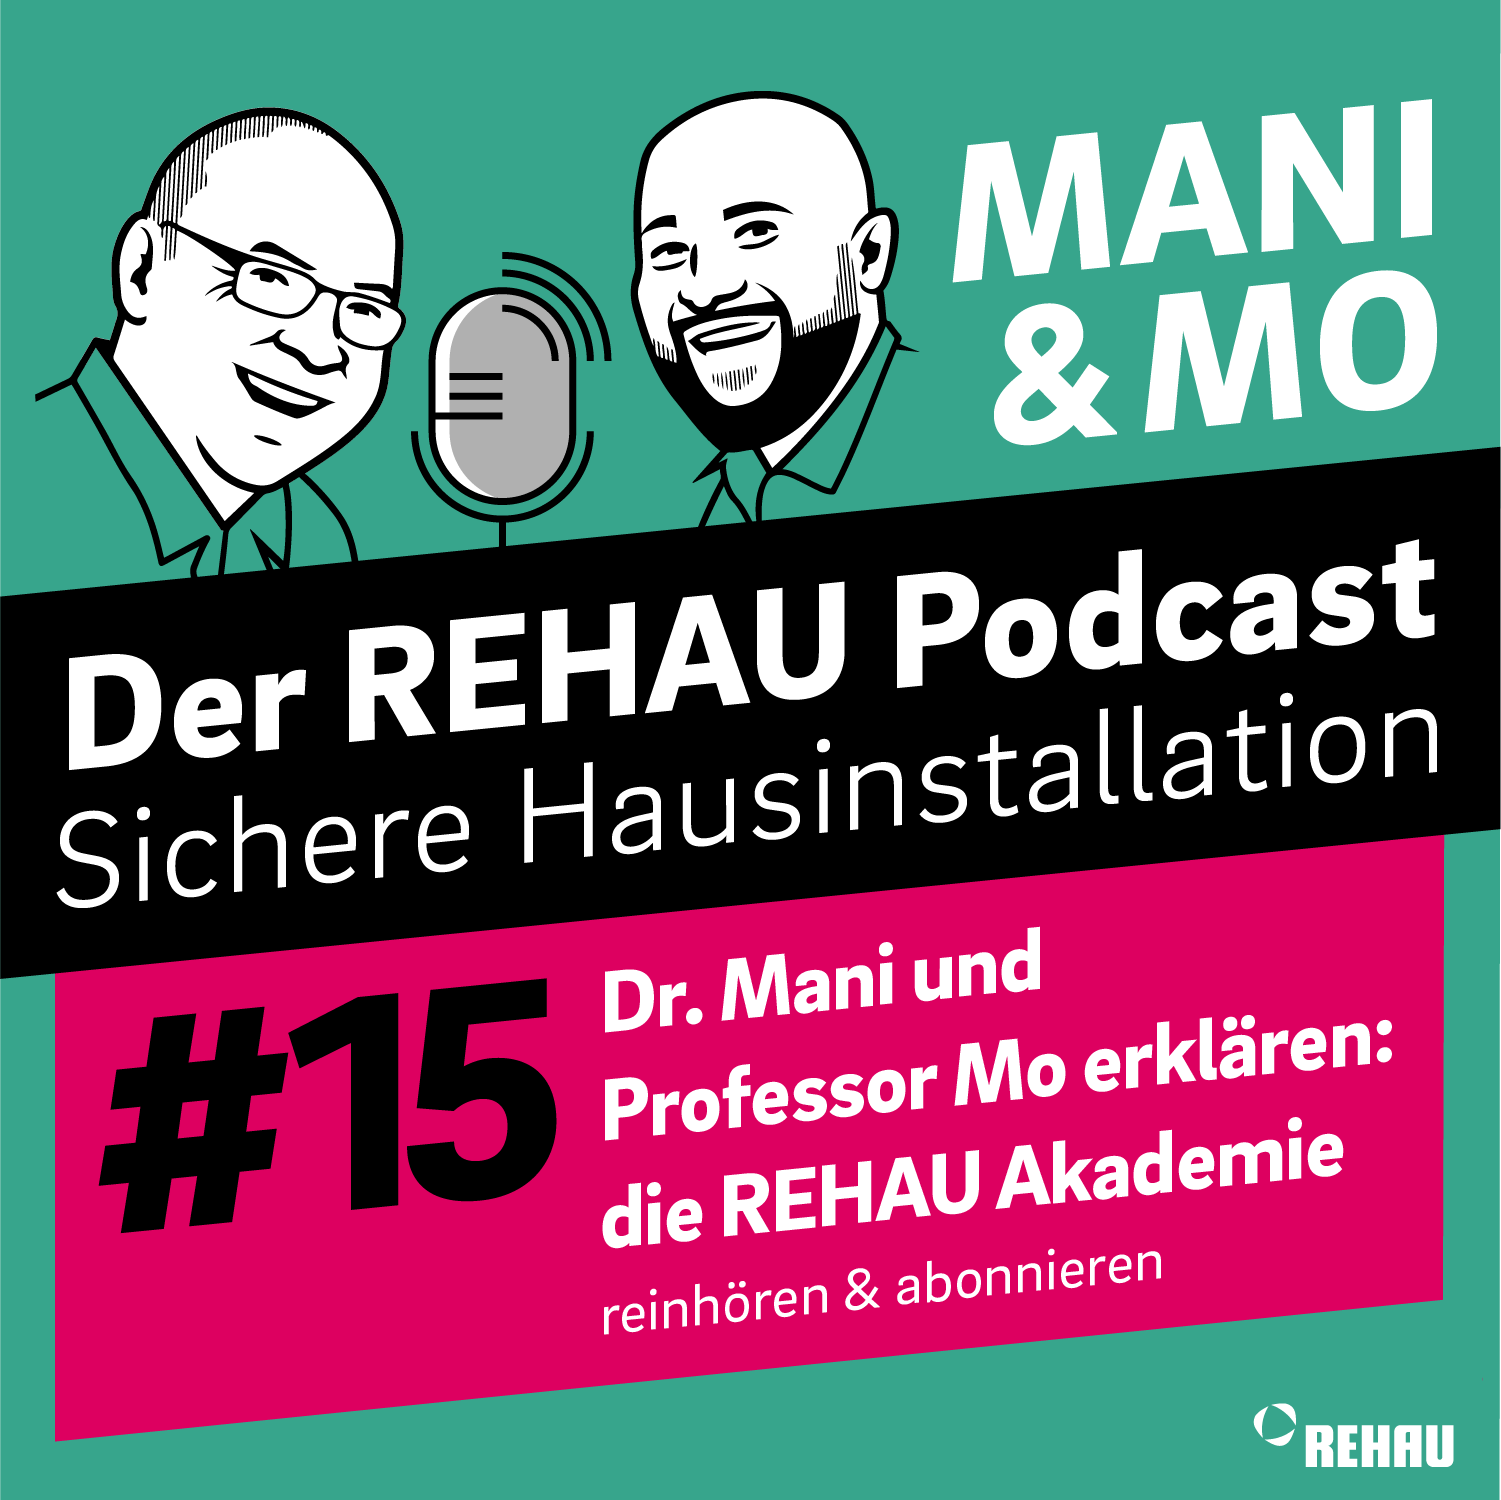 Dr. Mani und Professor Mo erklären: die REHAU Akademie